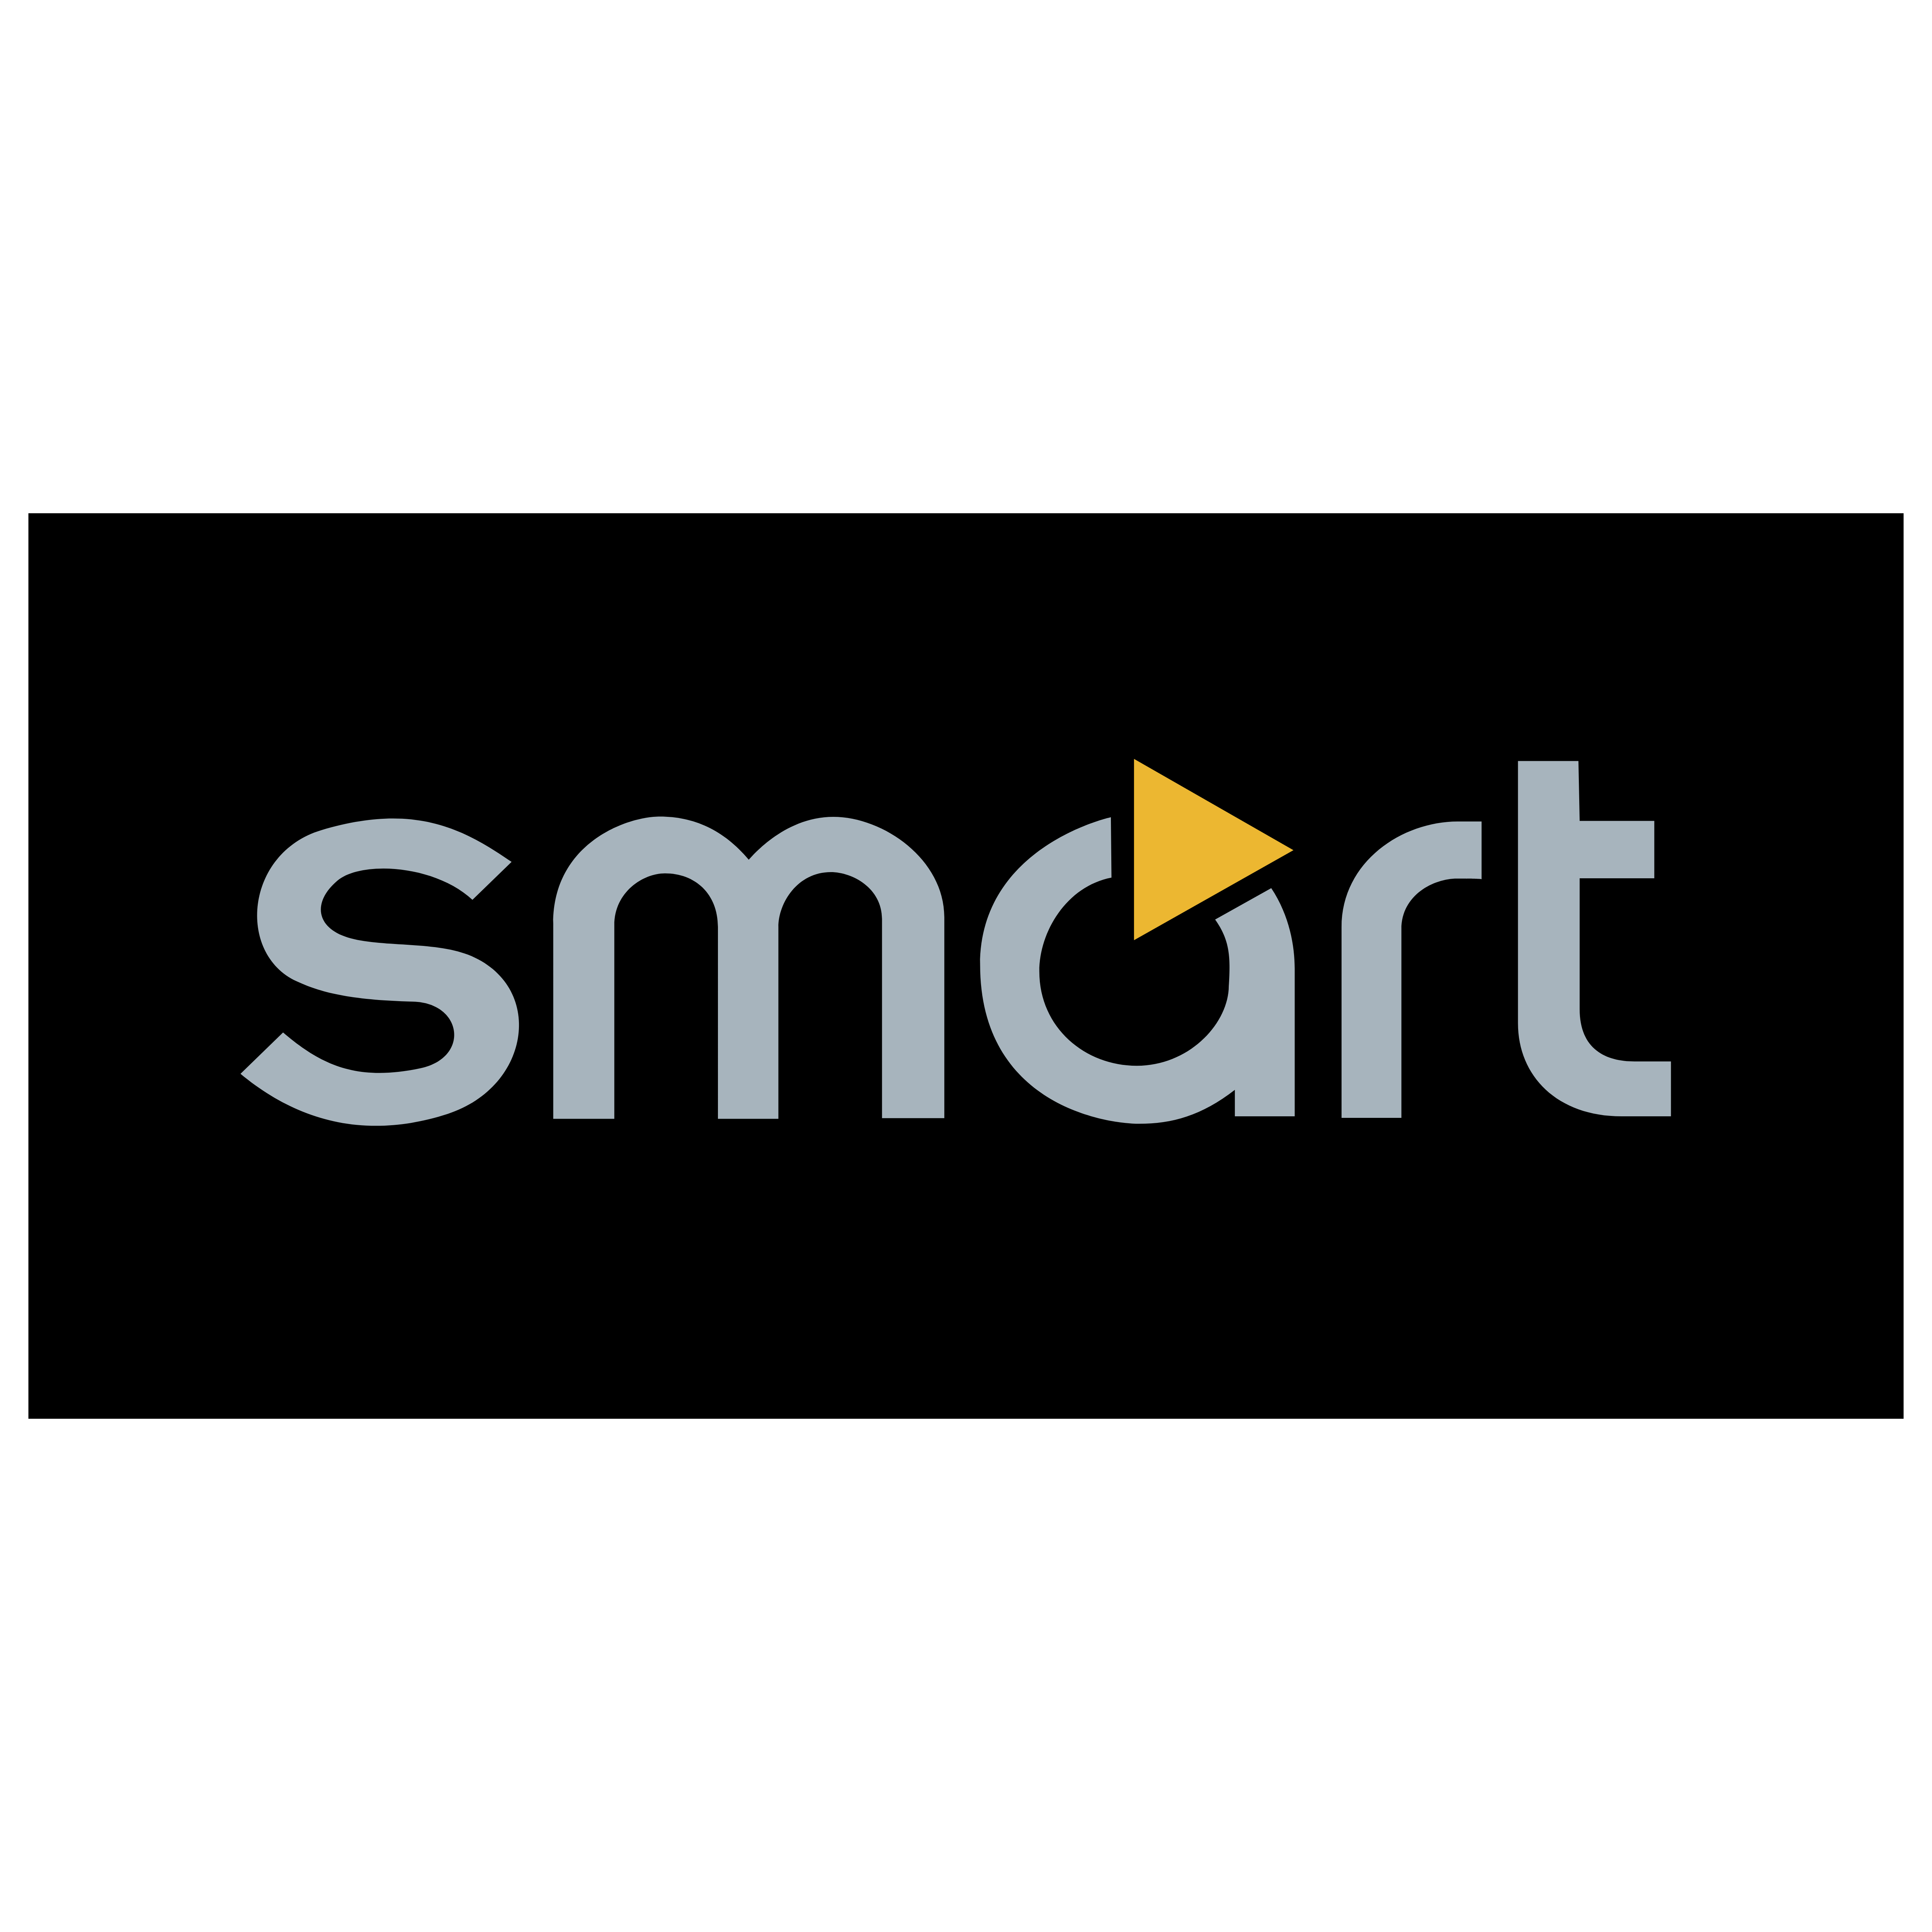 Smart Logo - Smart – Logos Download